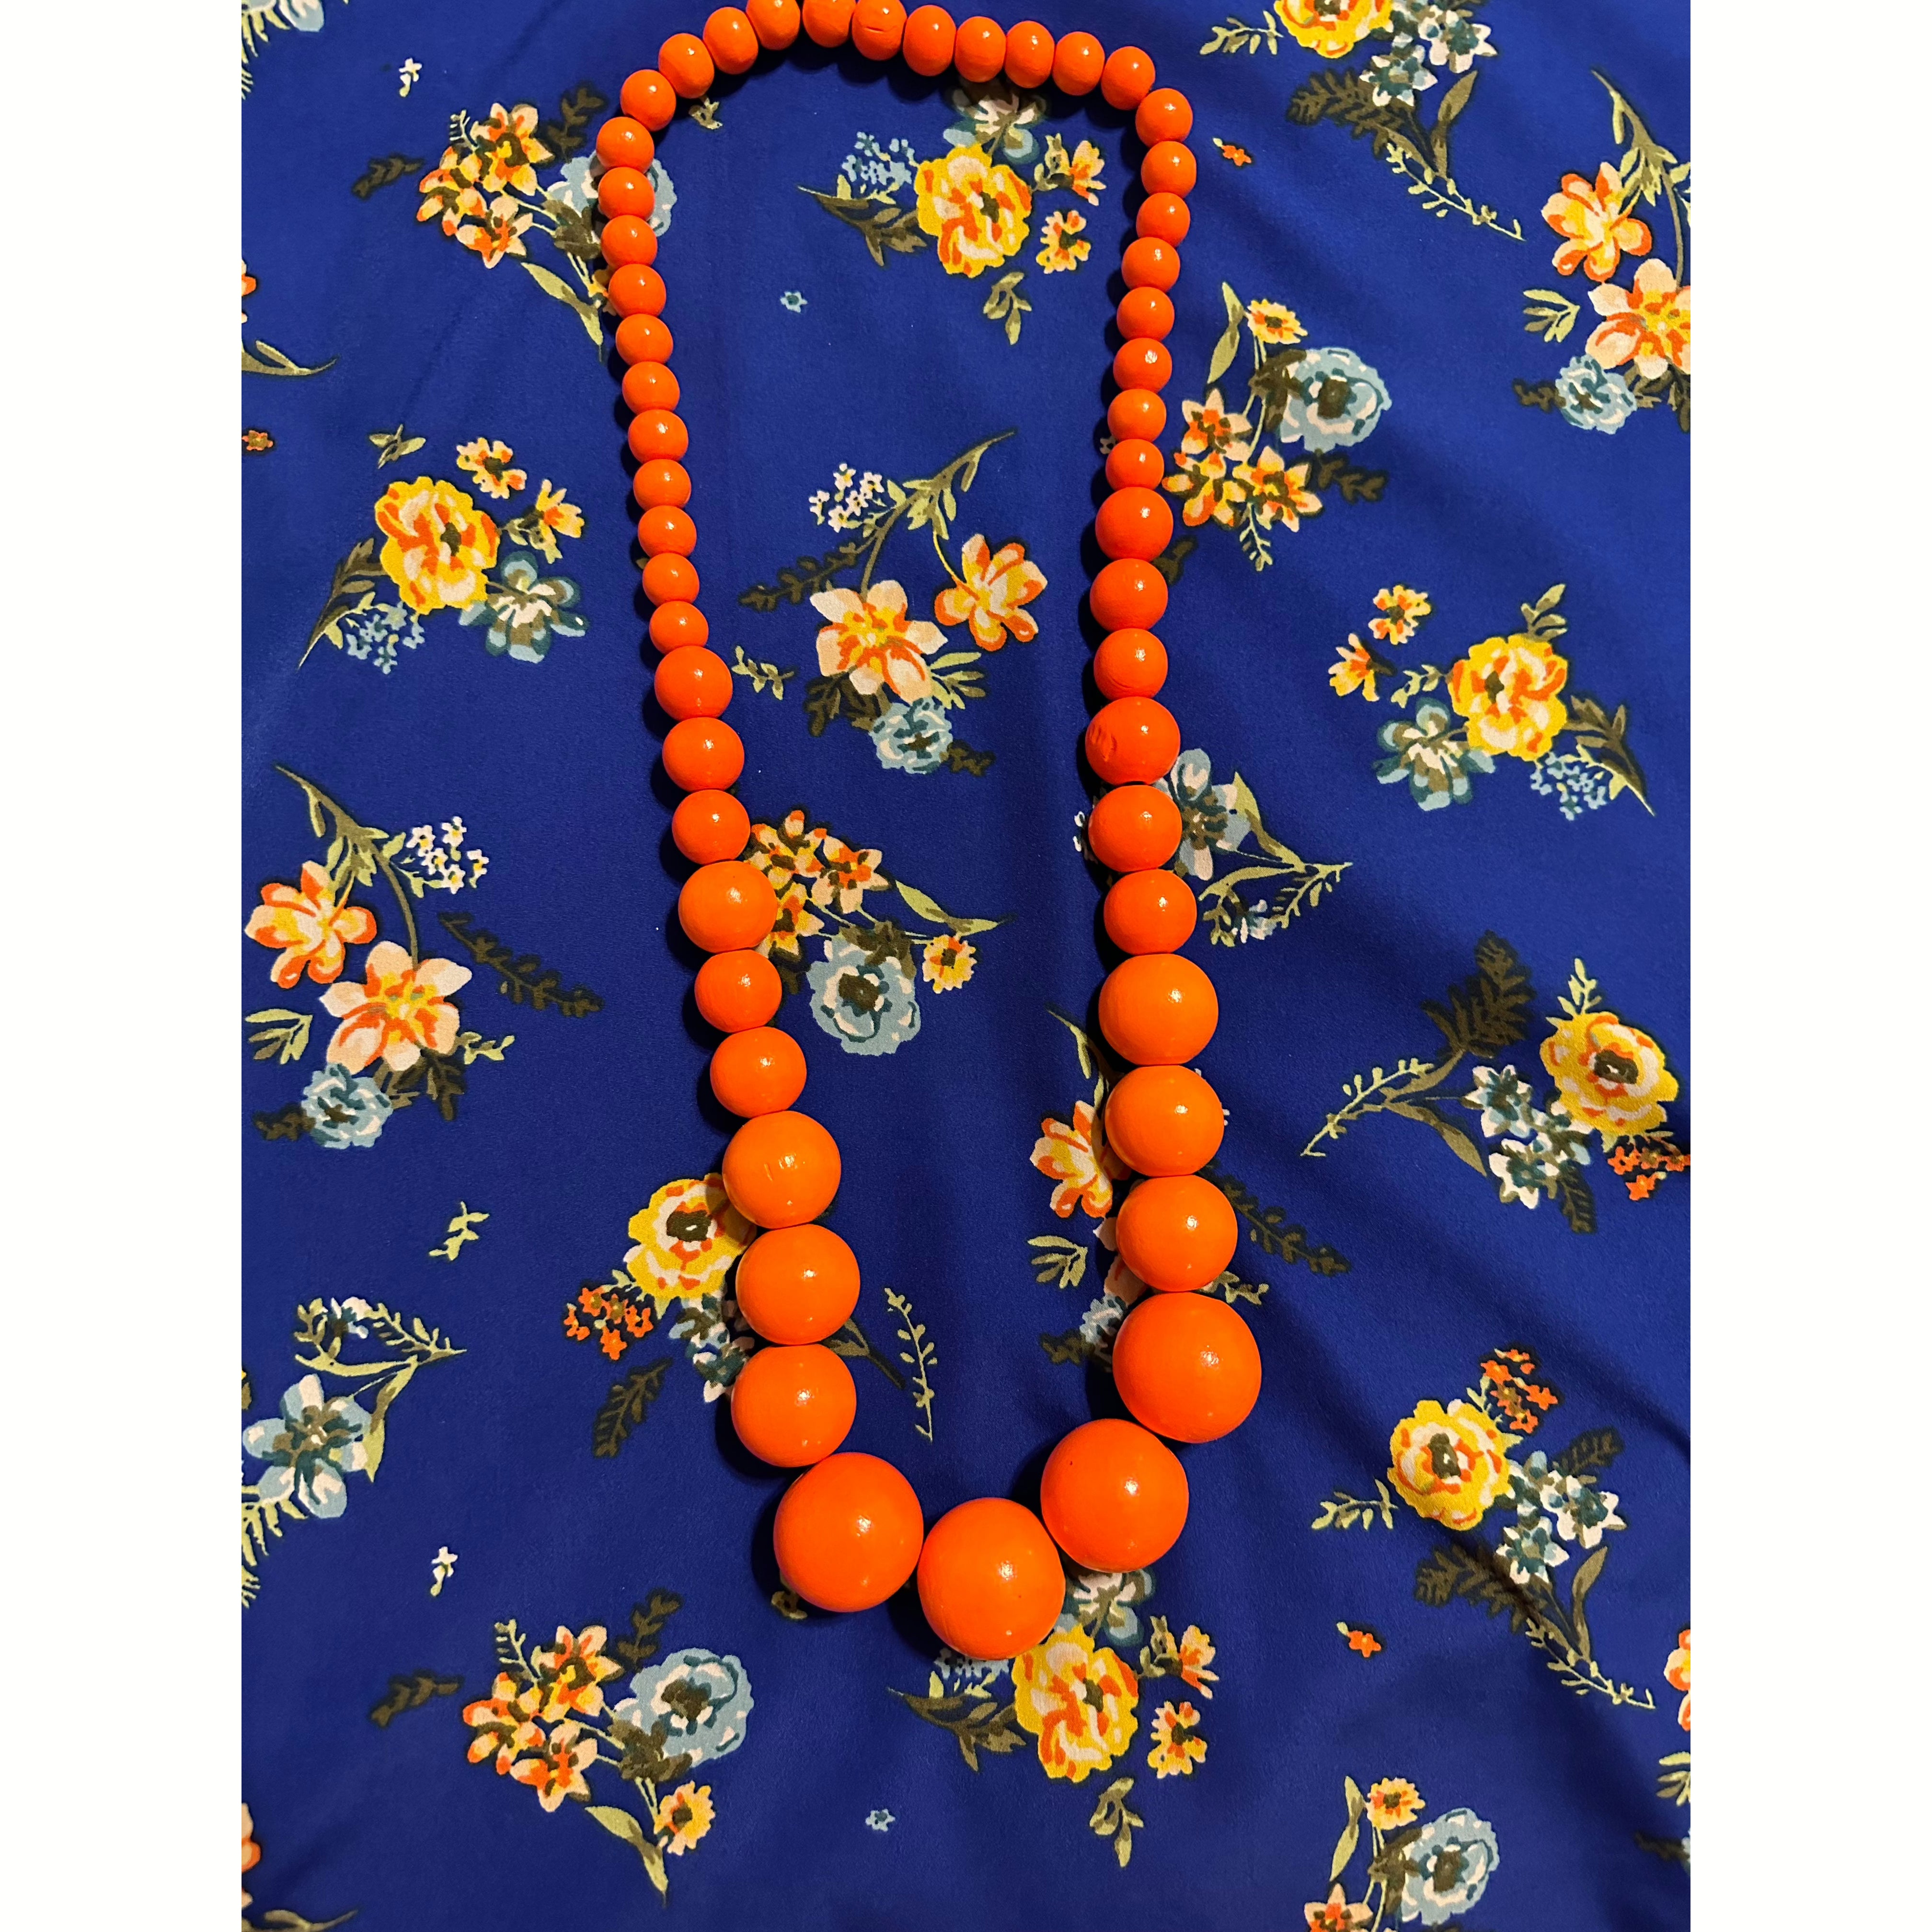 Orange Wood Necklace